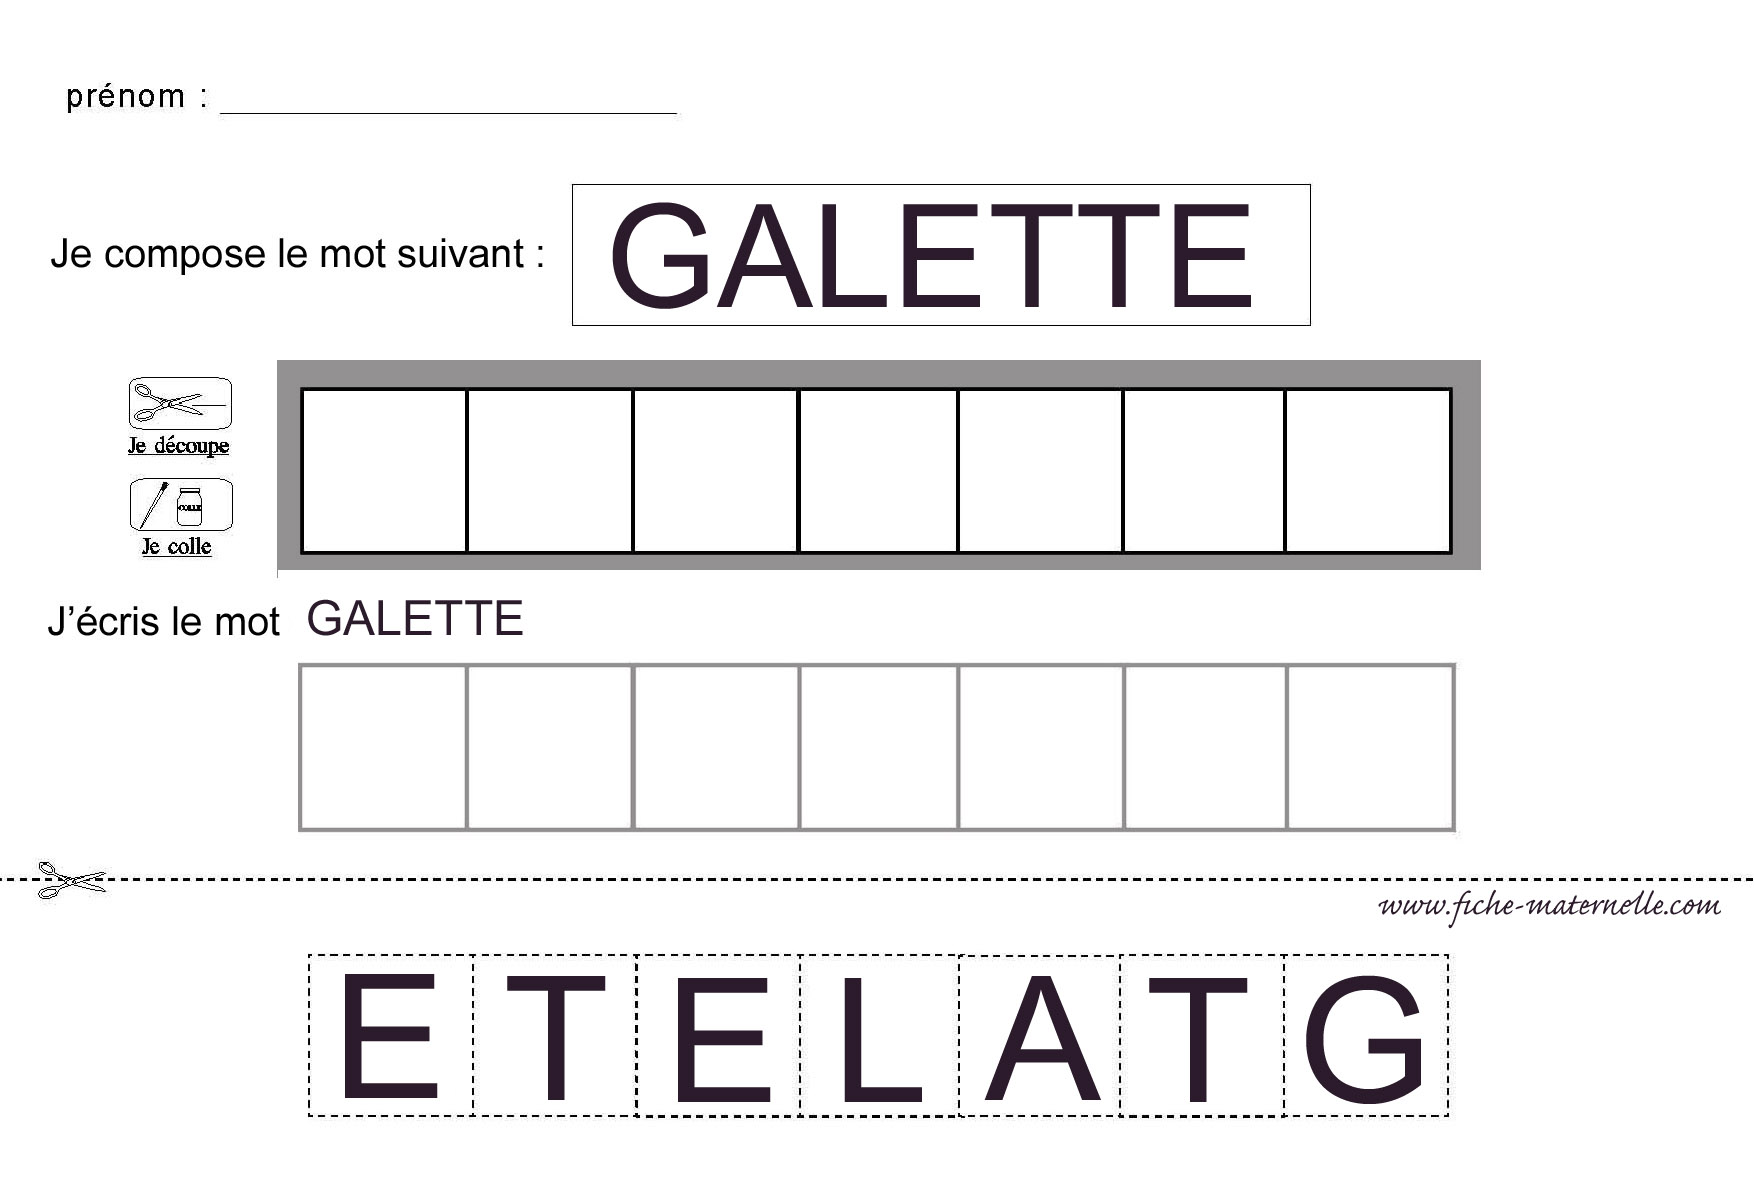 Le mot galette en lettres capitales